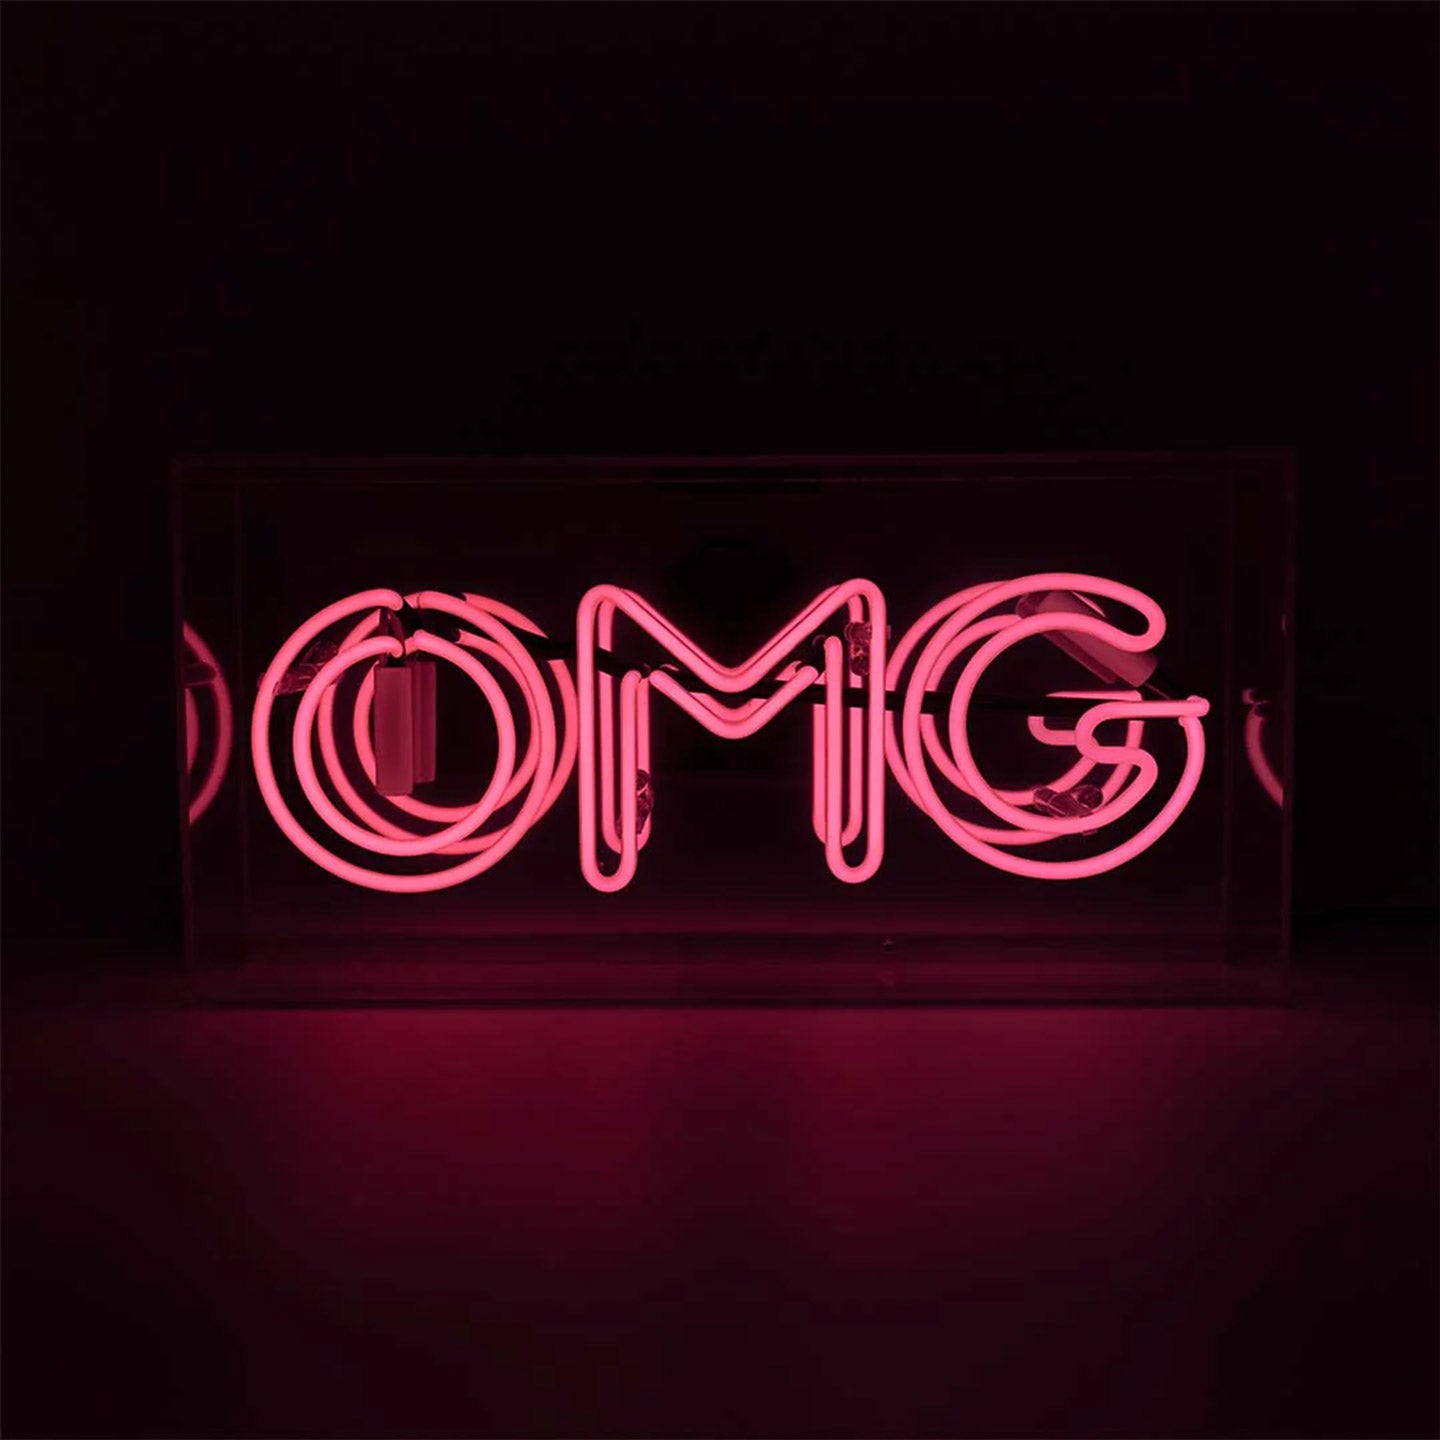 Neon-Sign "OMG"